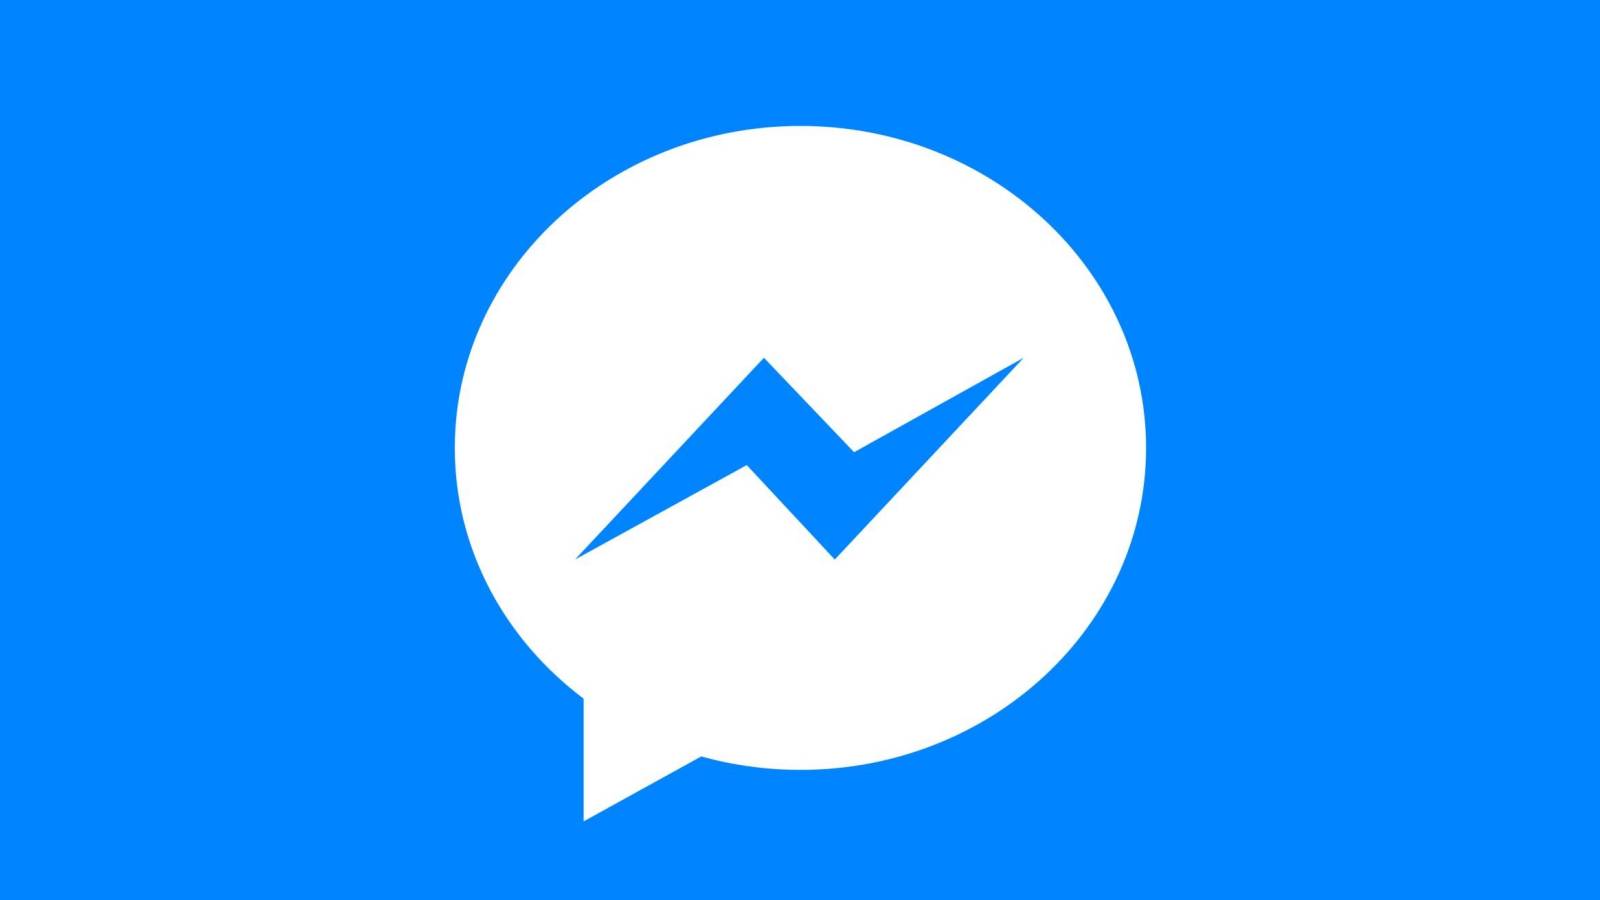 Nowa aktualizacja Facebook Messengera